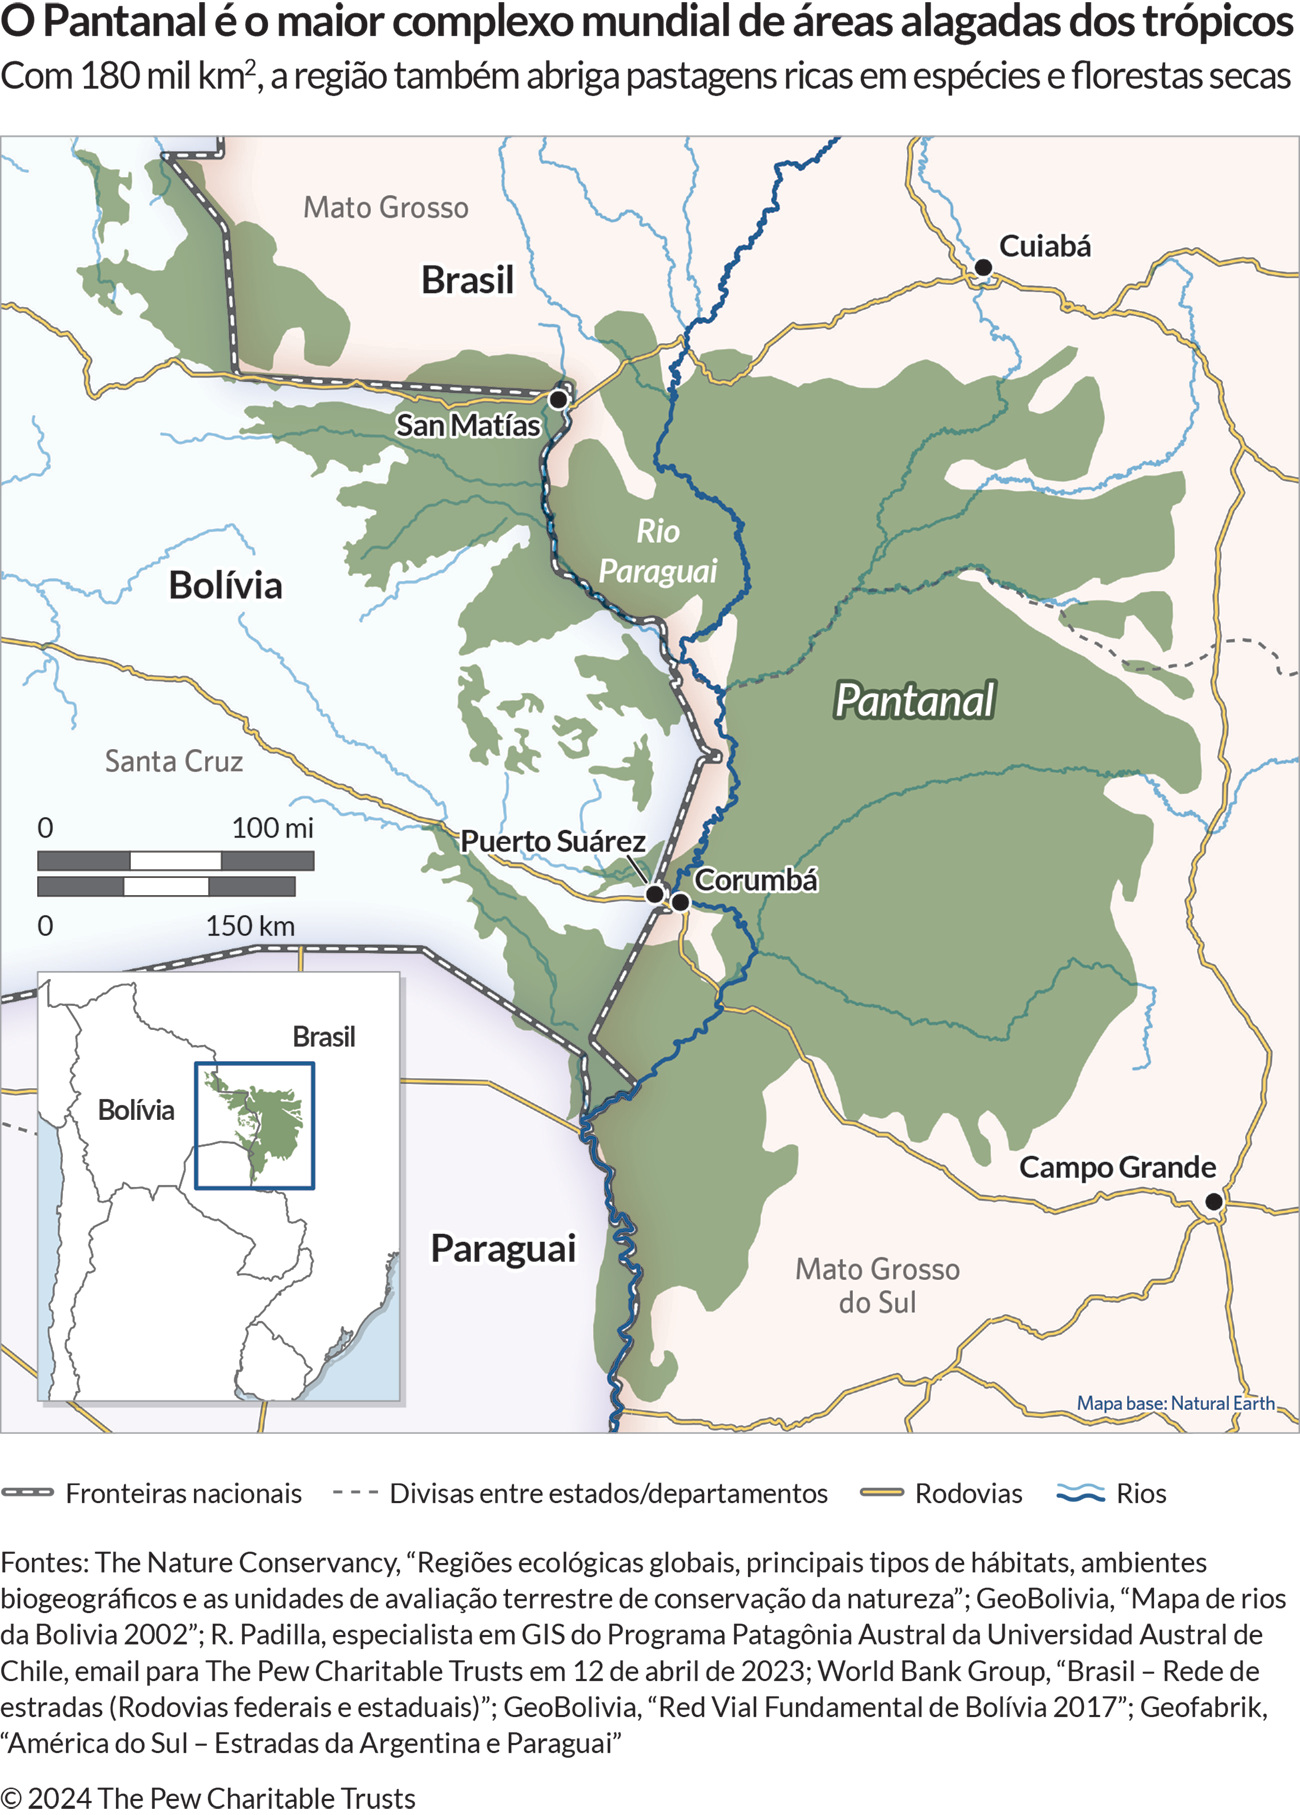 Um mapa mostra a região da América do Sul ao redor da fronteira entre Bolívia, Brasil e Paraguai, com uma área em verde-escuro denominada “Pantanal”. O mapa identifica também alguns rios, rodovias, cidades, estados e departamentos. 